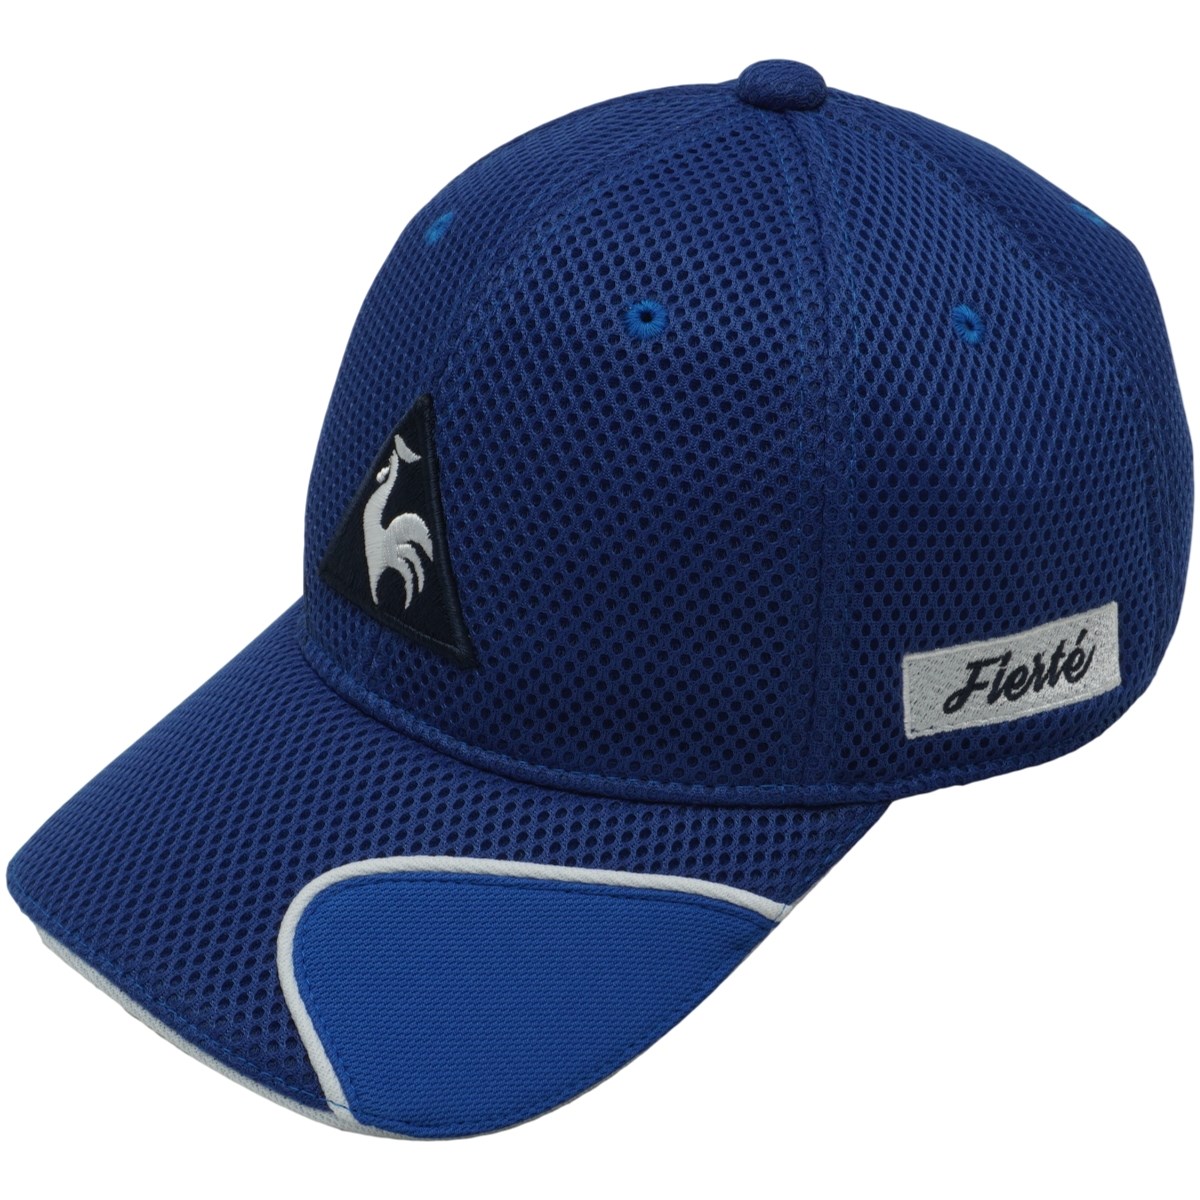 「ルコックゴルフ ツアーライク3Dメッシュ涼感キャップ 」（帽子）- ゴルフ(GOLF)用品のネット通販